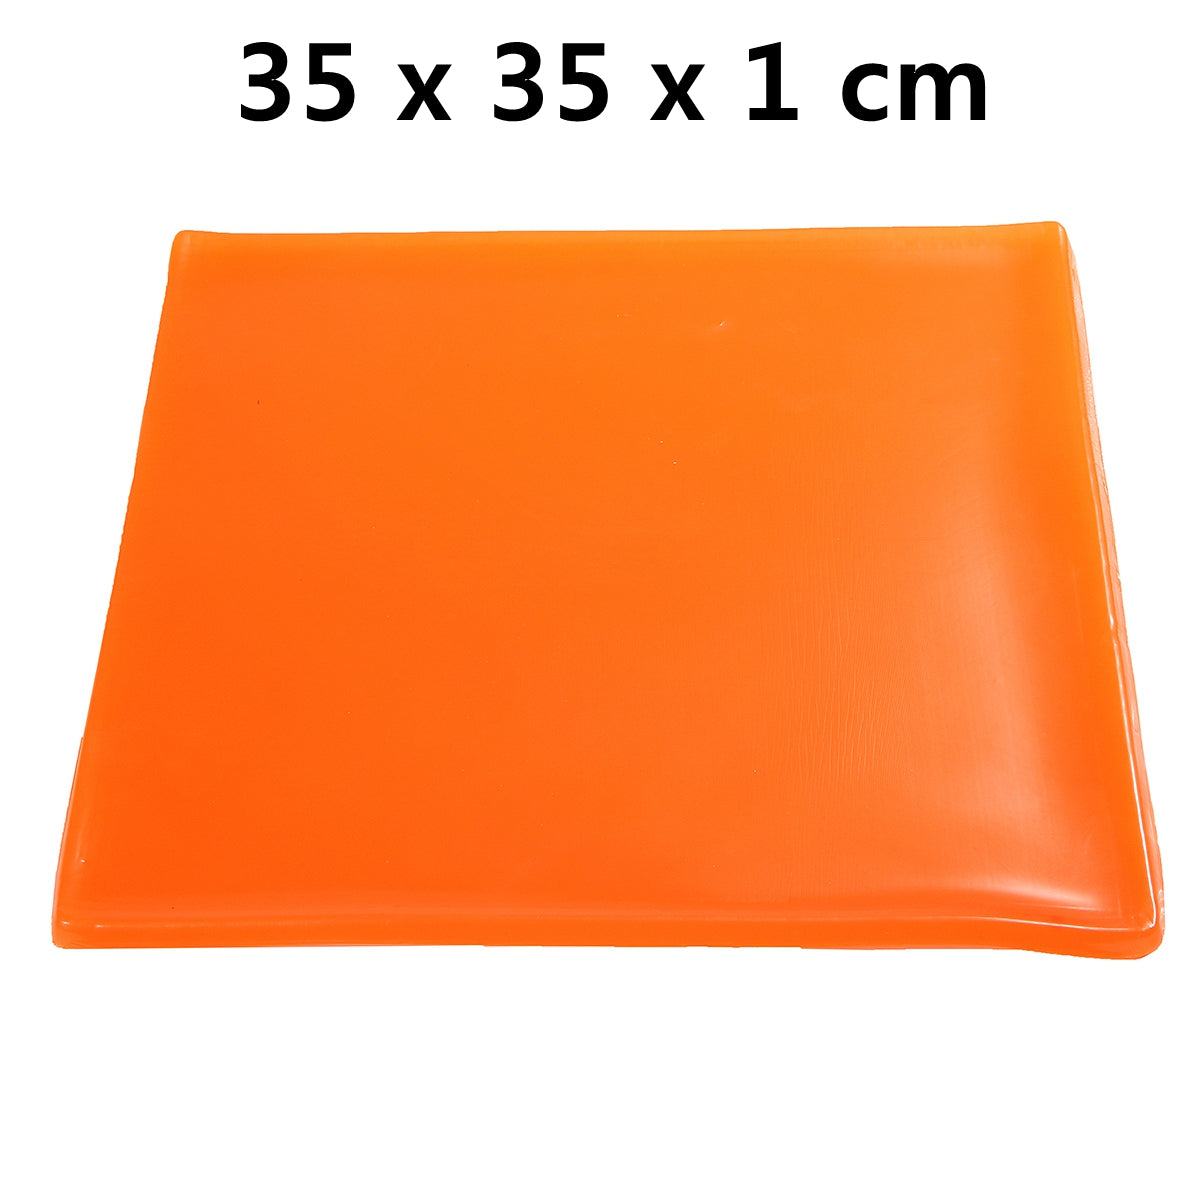 Dark Orange Cool Seat Cushion Gel Pad Shock Absorption Mat Comfortable Soft Orange Motorcycle ATV Office